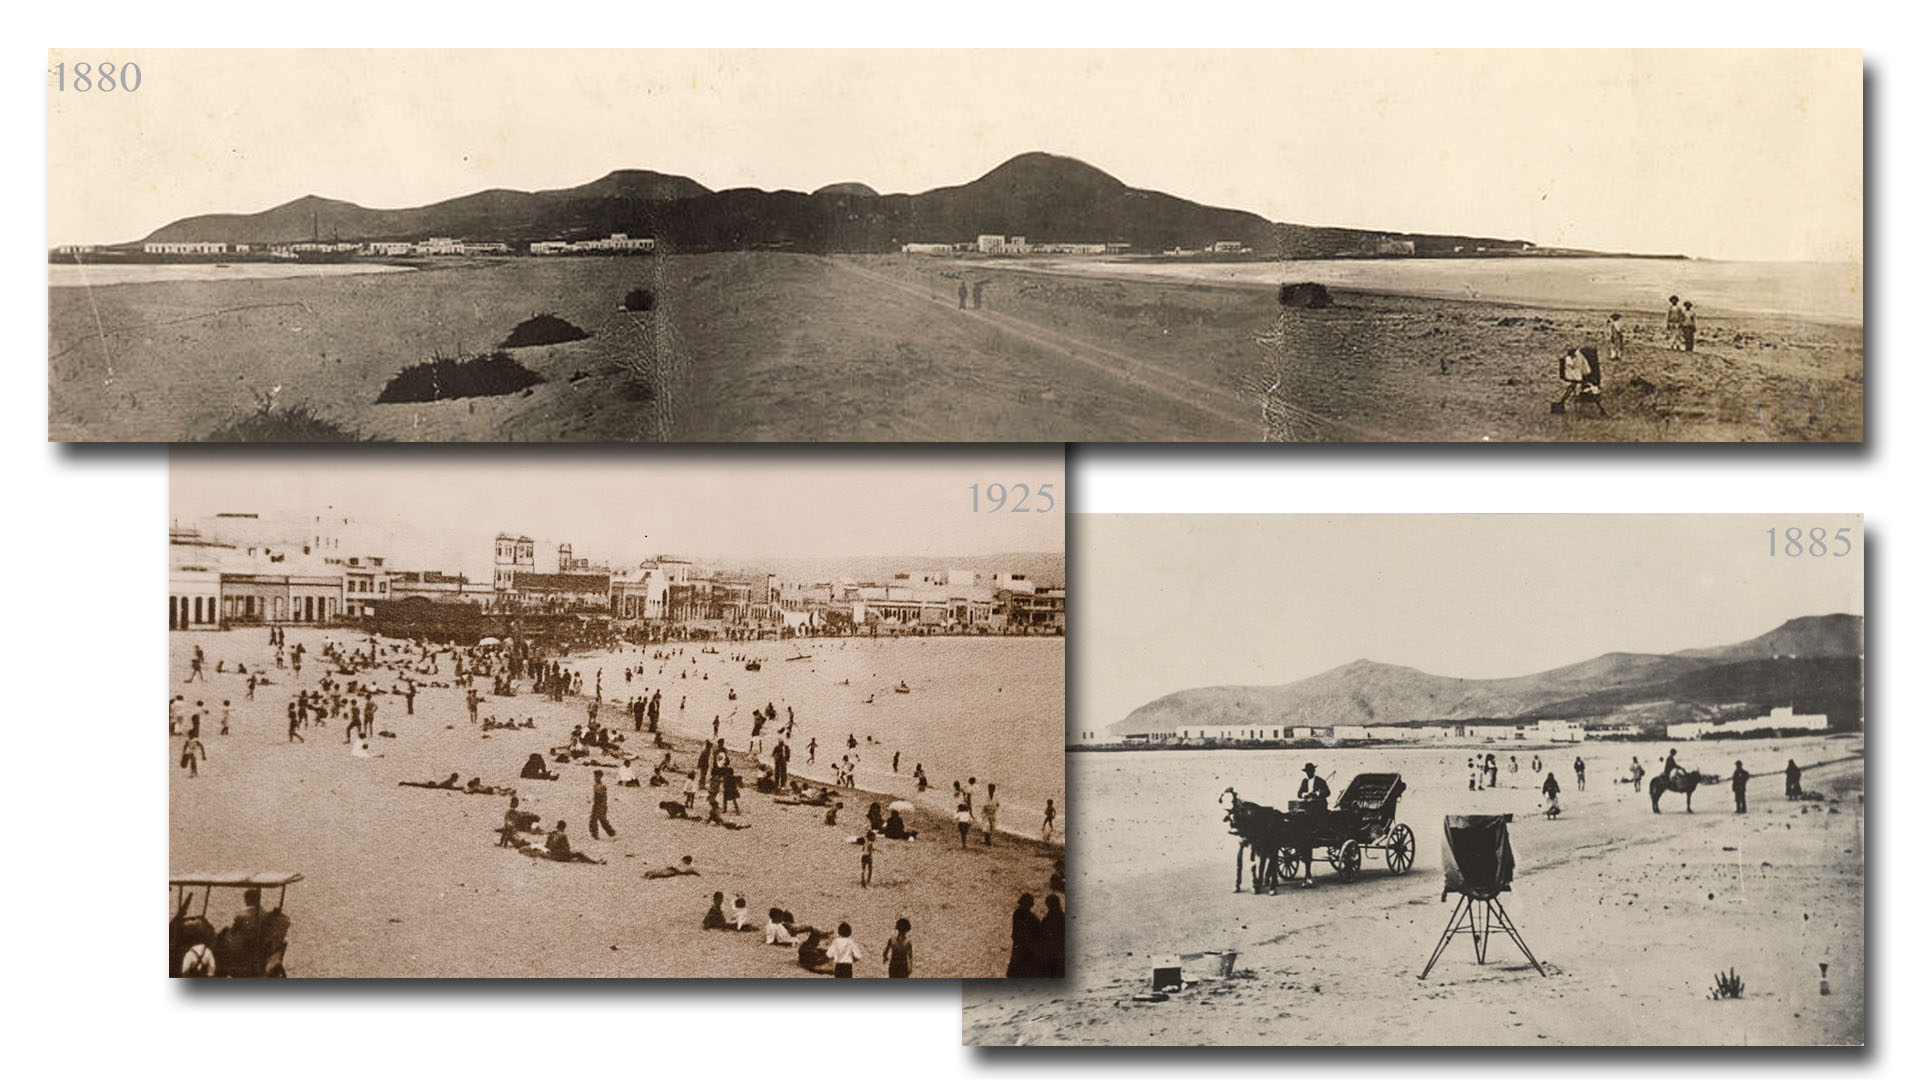 Bilder zeigen den Istmo 1880 noch als unbebaute, weite Sandfläche. Schon 1925 stehen stattliche Häuser und reges Strandleben herrscht.